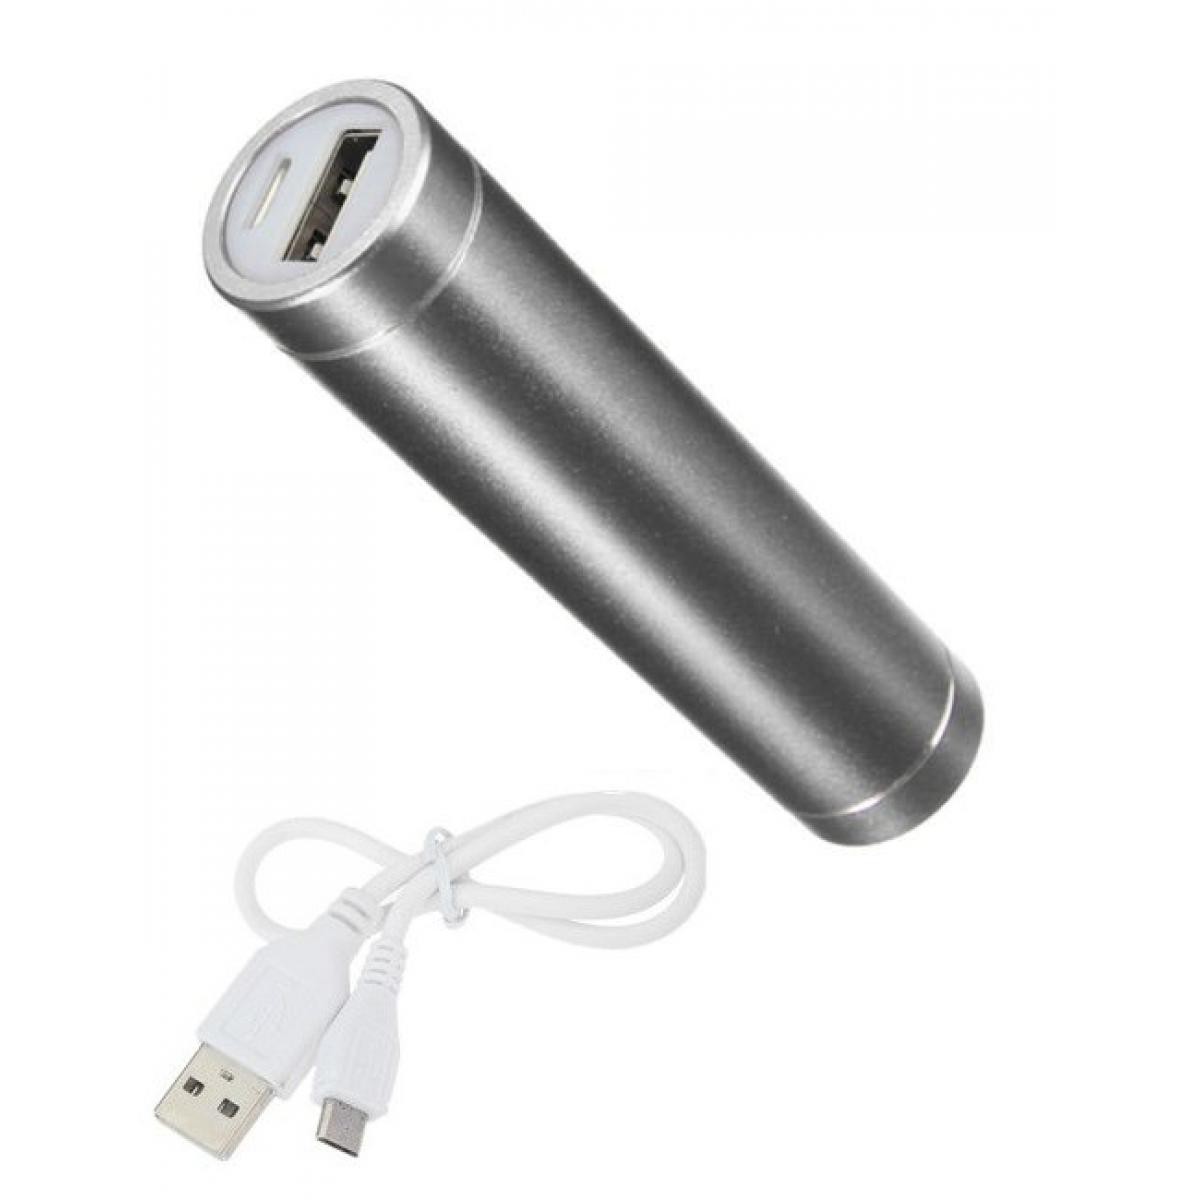 Shot - Batterie Chargeur Externe pour GOOGLE Pixel 3a Power Bank 2600mAh avec Cable USB/Mirco USB Secours Telephone (ARGENT) - Chargeur secteur téléphone